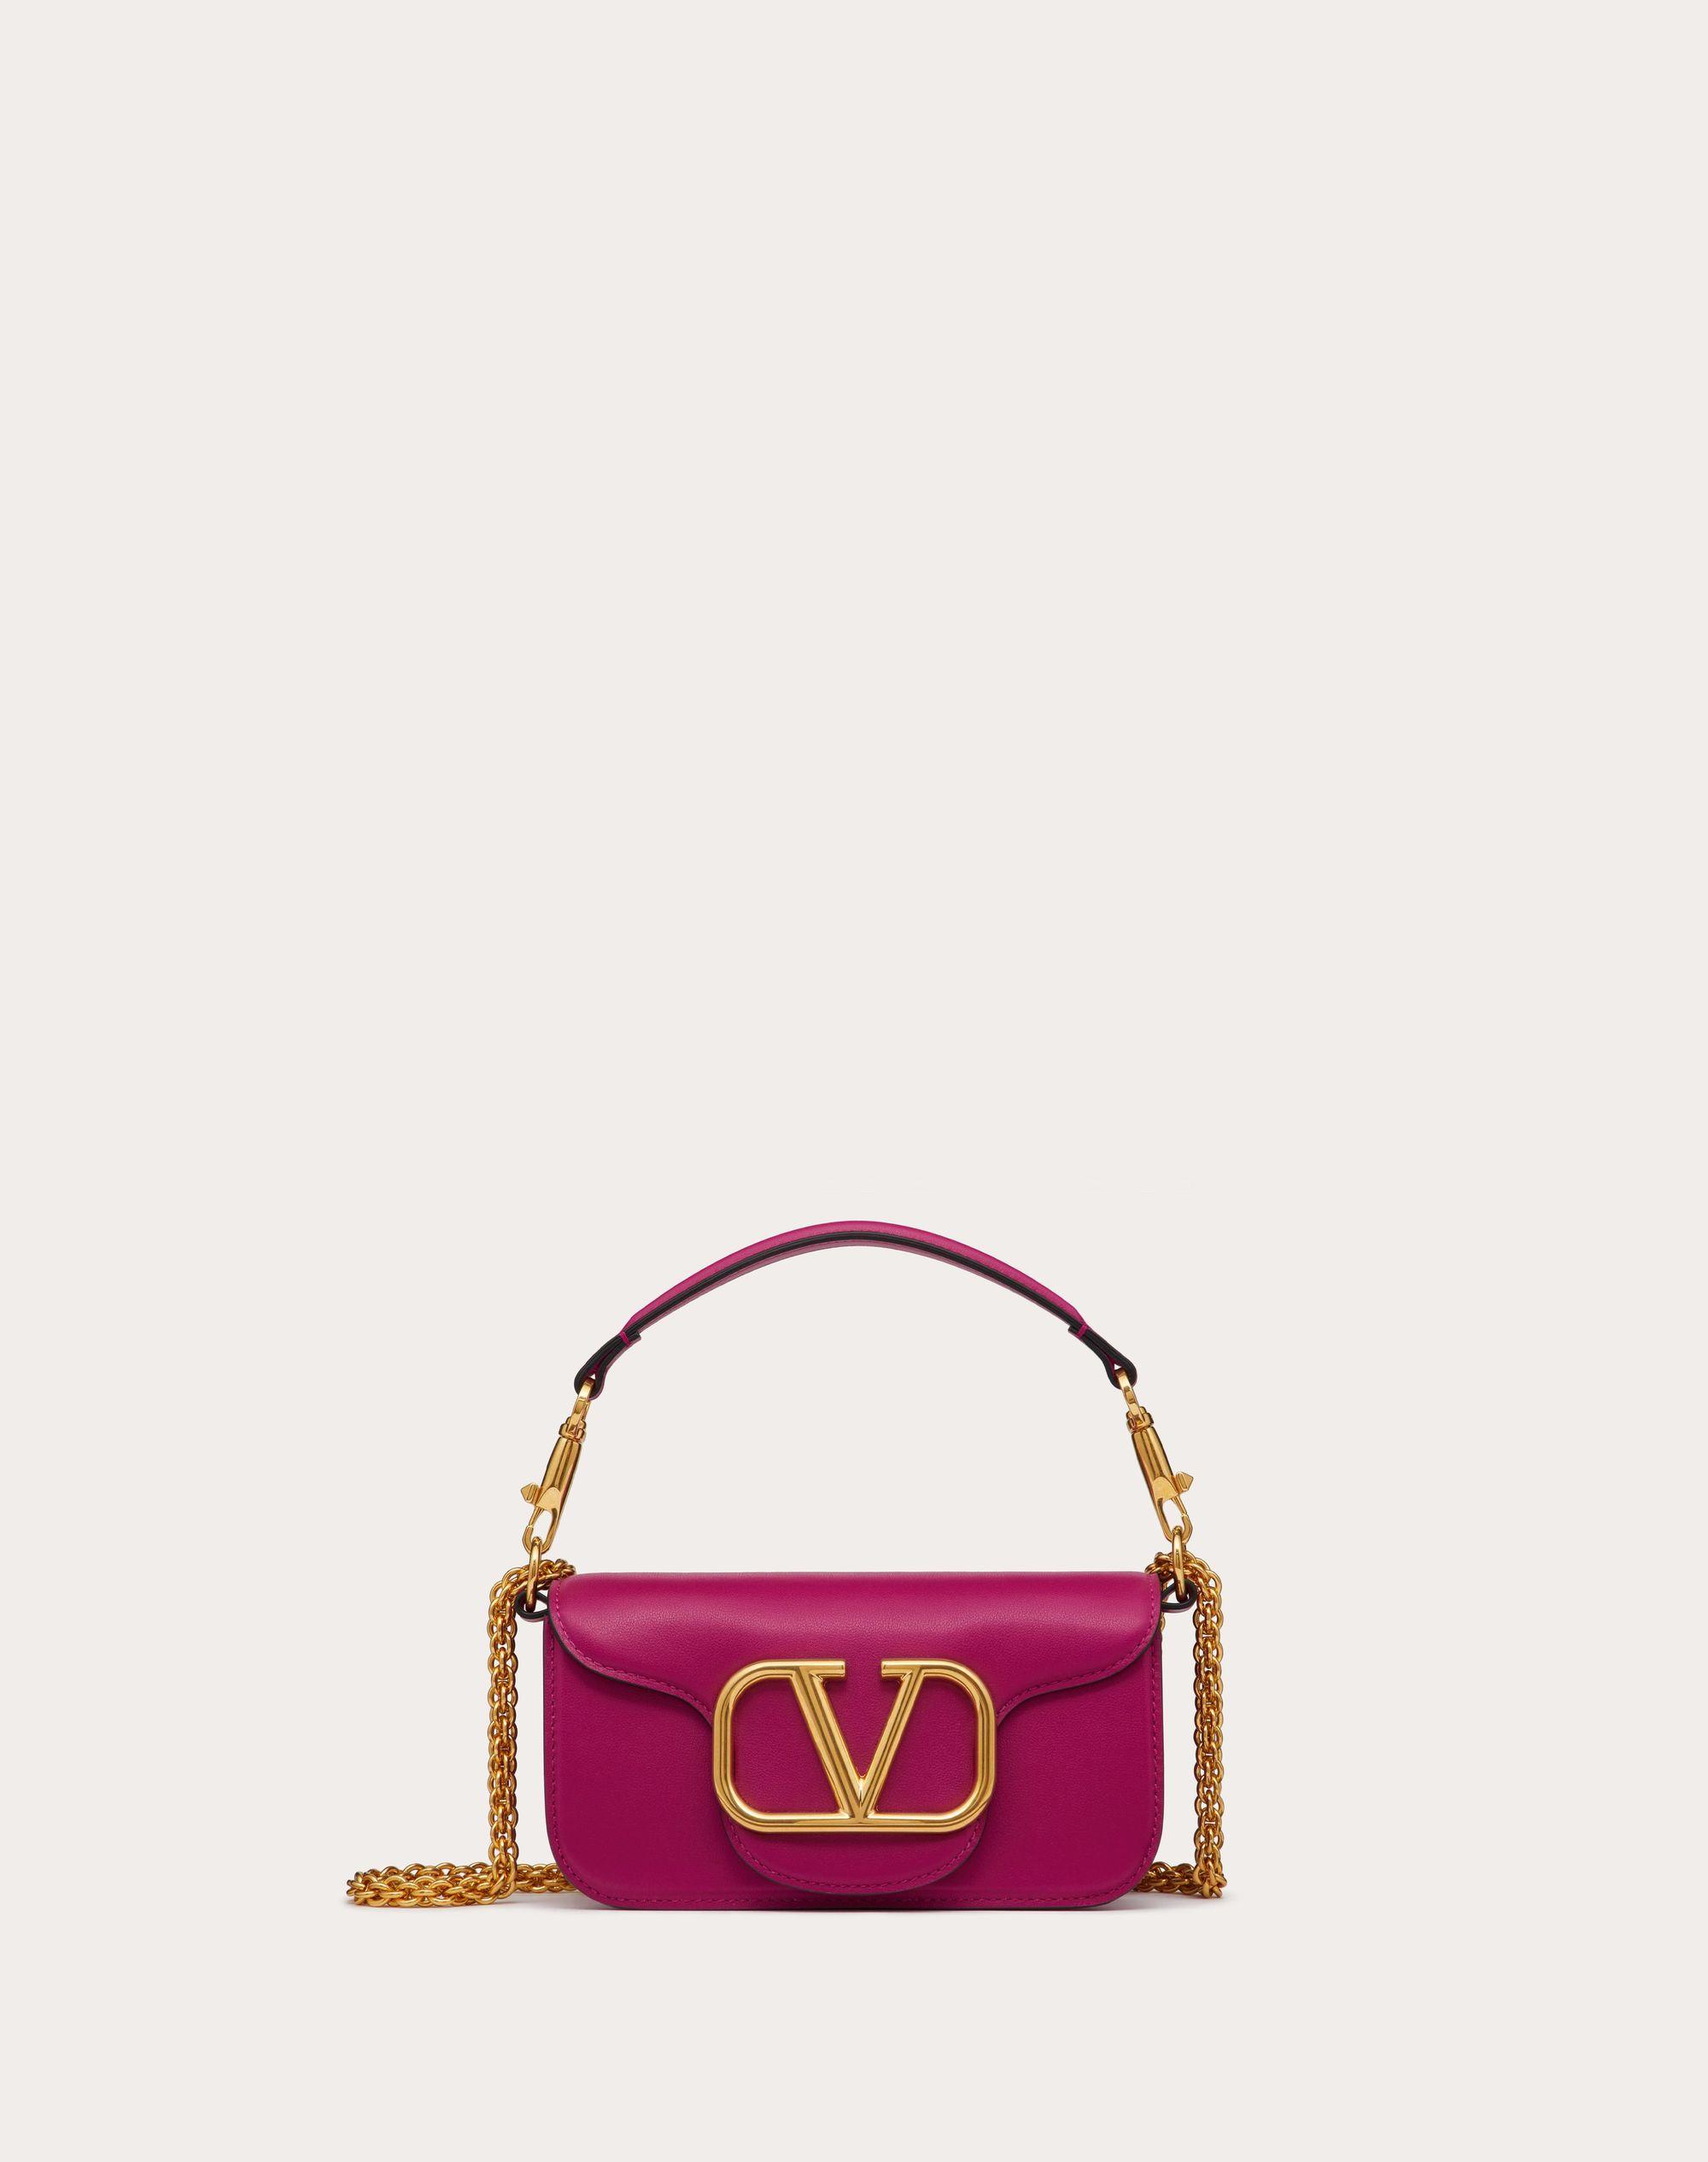 Valentino Garavani Locò Small Shoulder Bag In Calfskin in Pink | Lyst